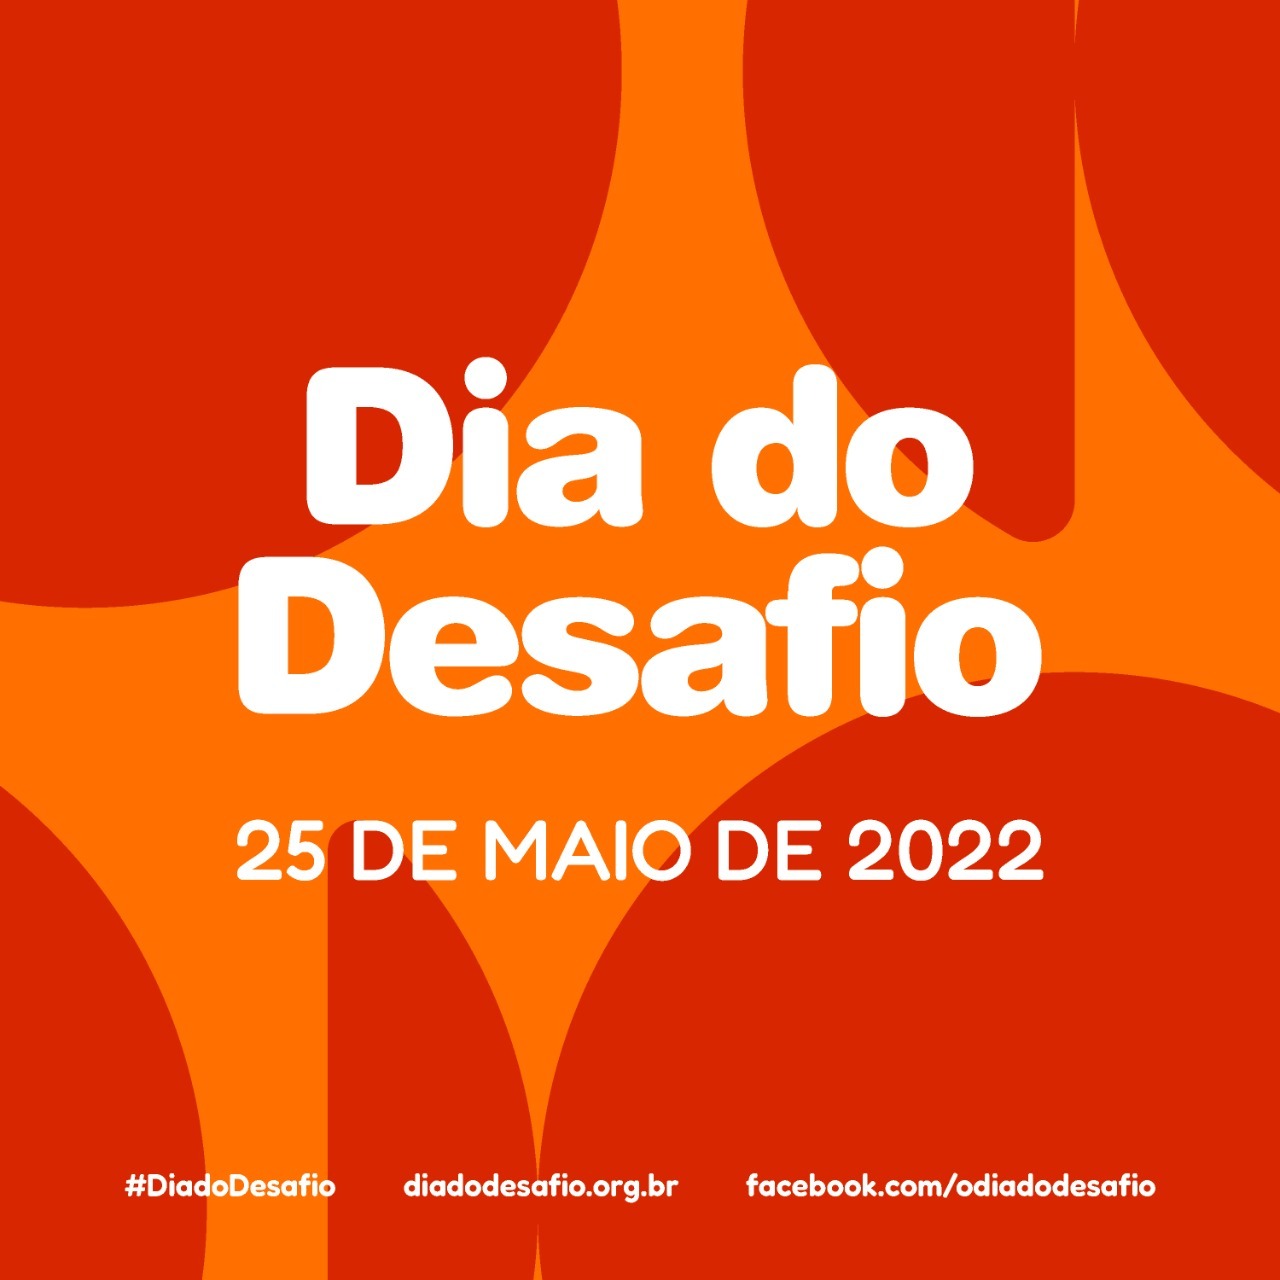 Dia do Desafio será em 25 de maio Araçatuba em Foco